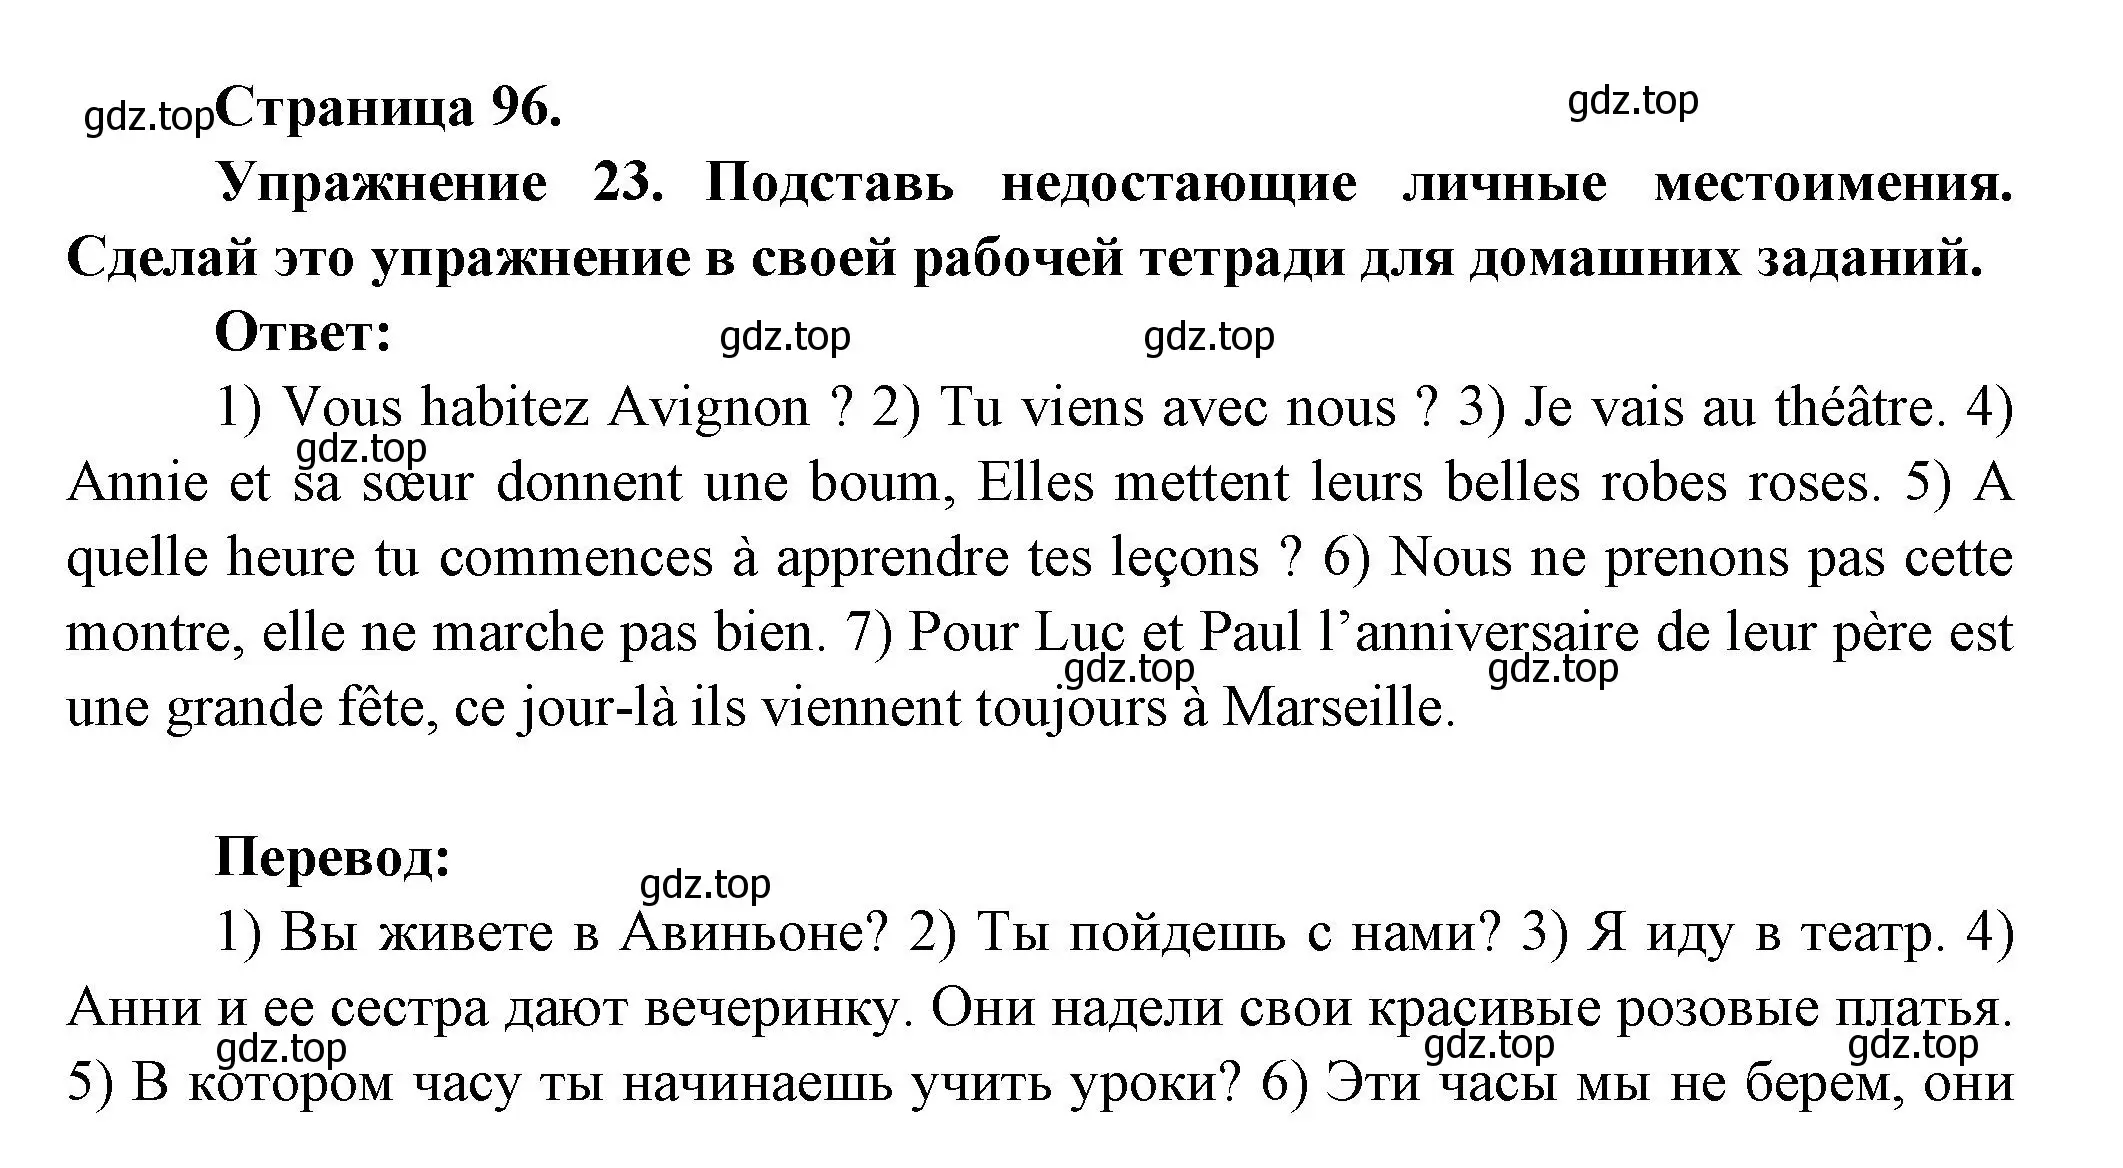 Решение номер 23 (страница 96) гдз по французскому языку 5 класс Береговская, Белосельская, учебник 1 часть